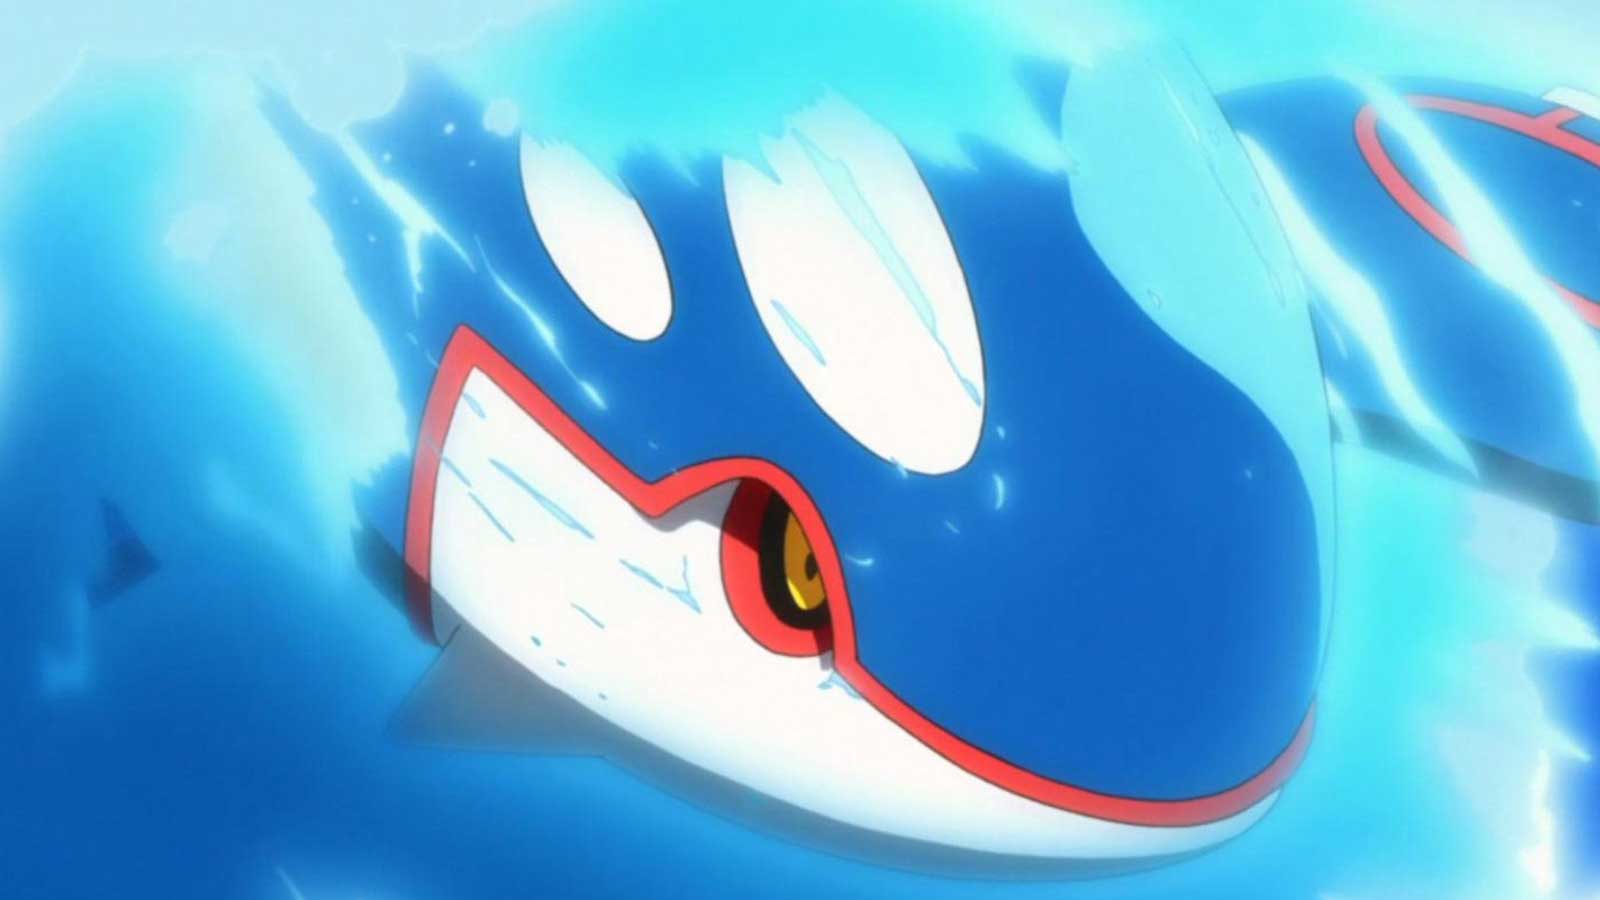 Mejores pokémon de tipo agua en Pokémon GO (actualizado a marzo de 2019)